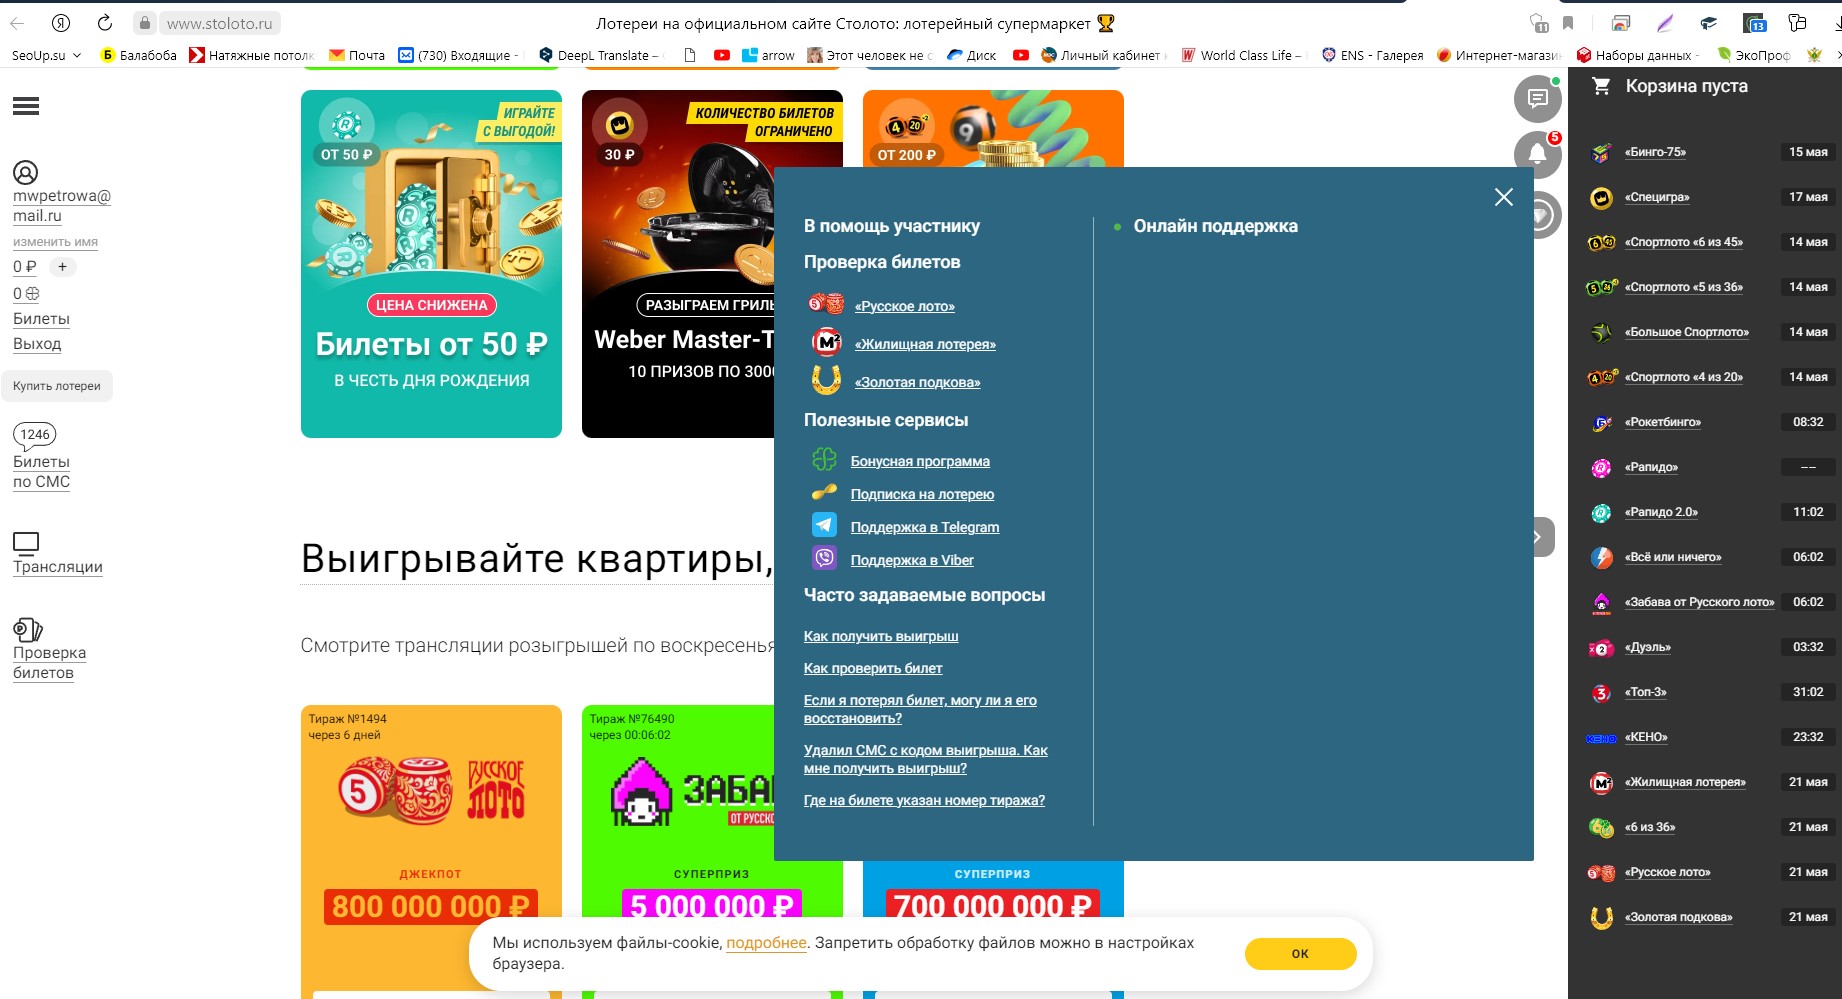 Так выглядит настоящий сайт stoloto.ru.